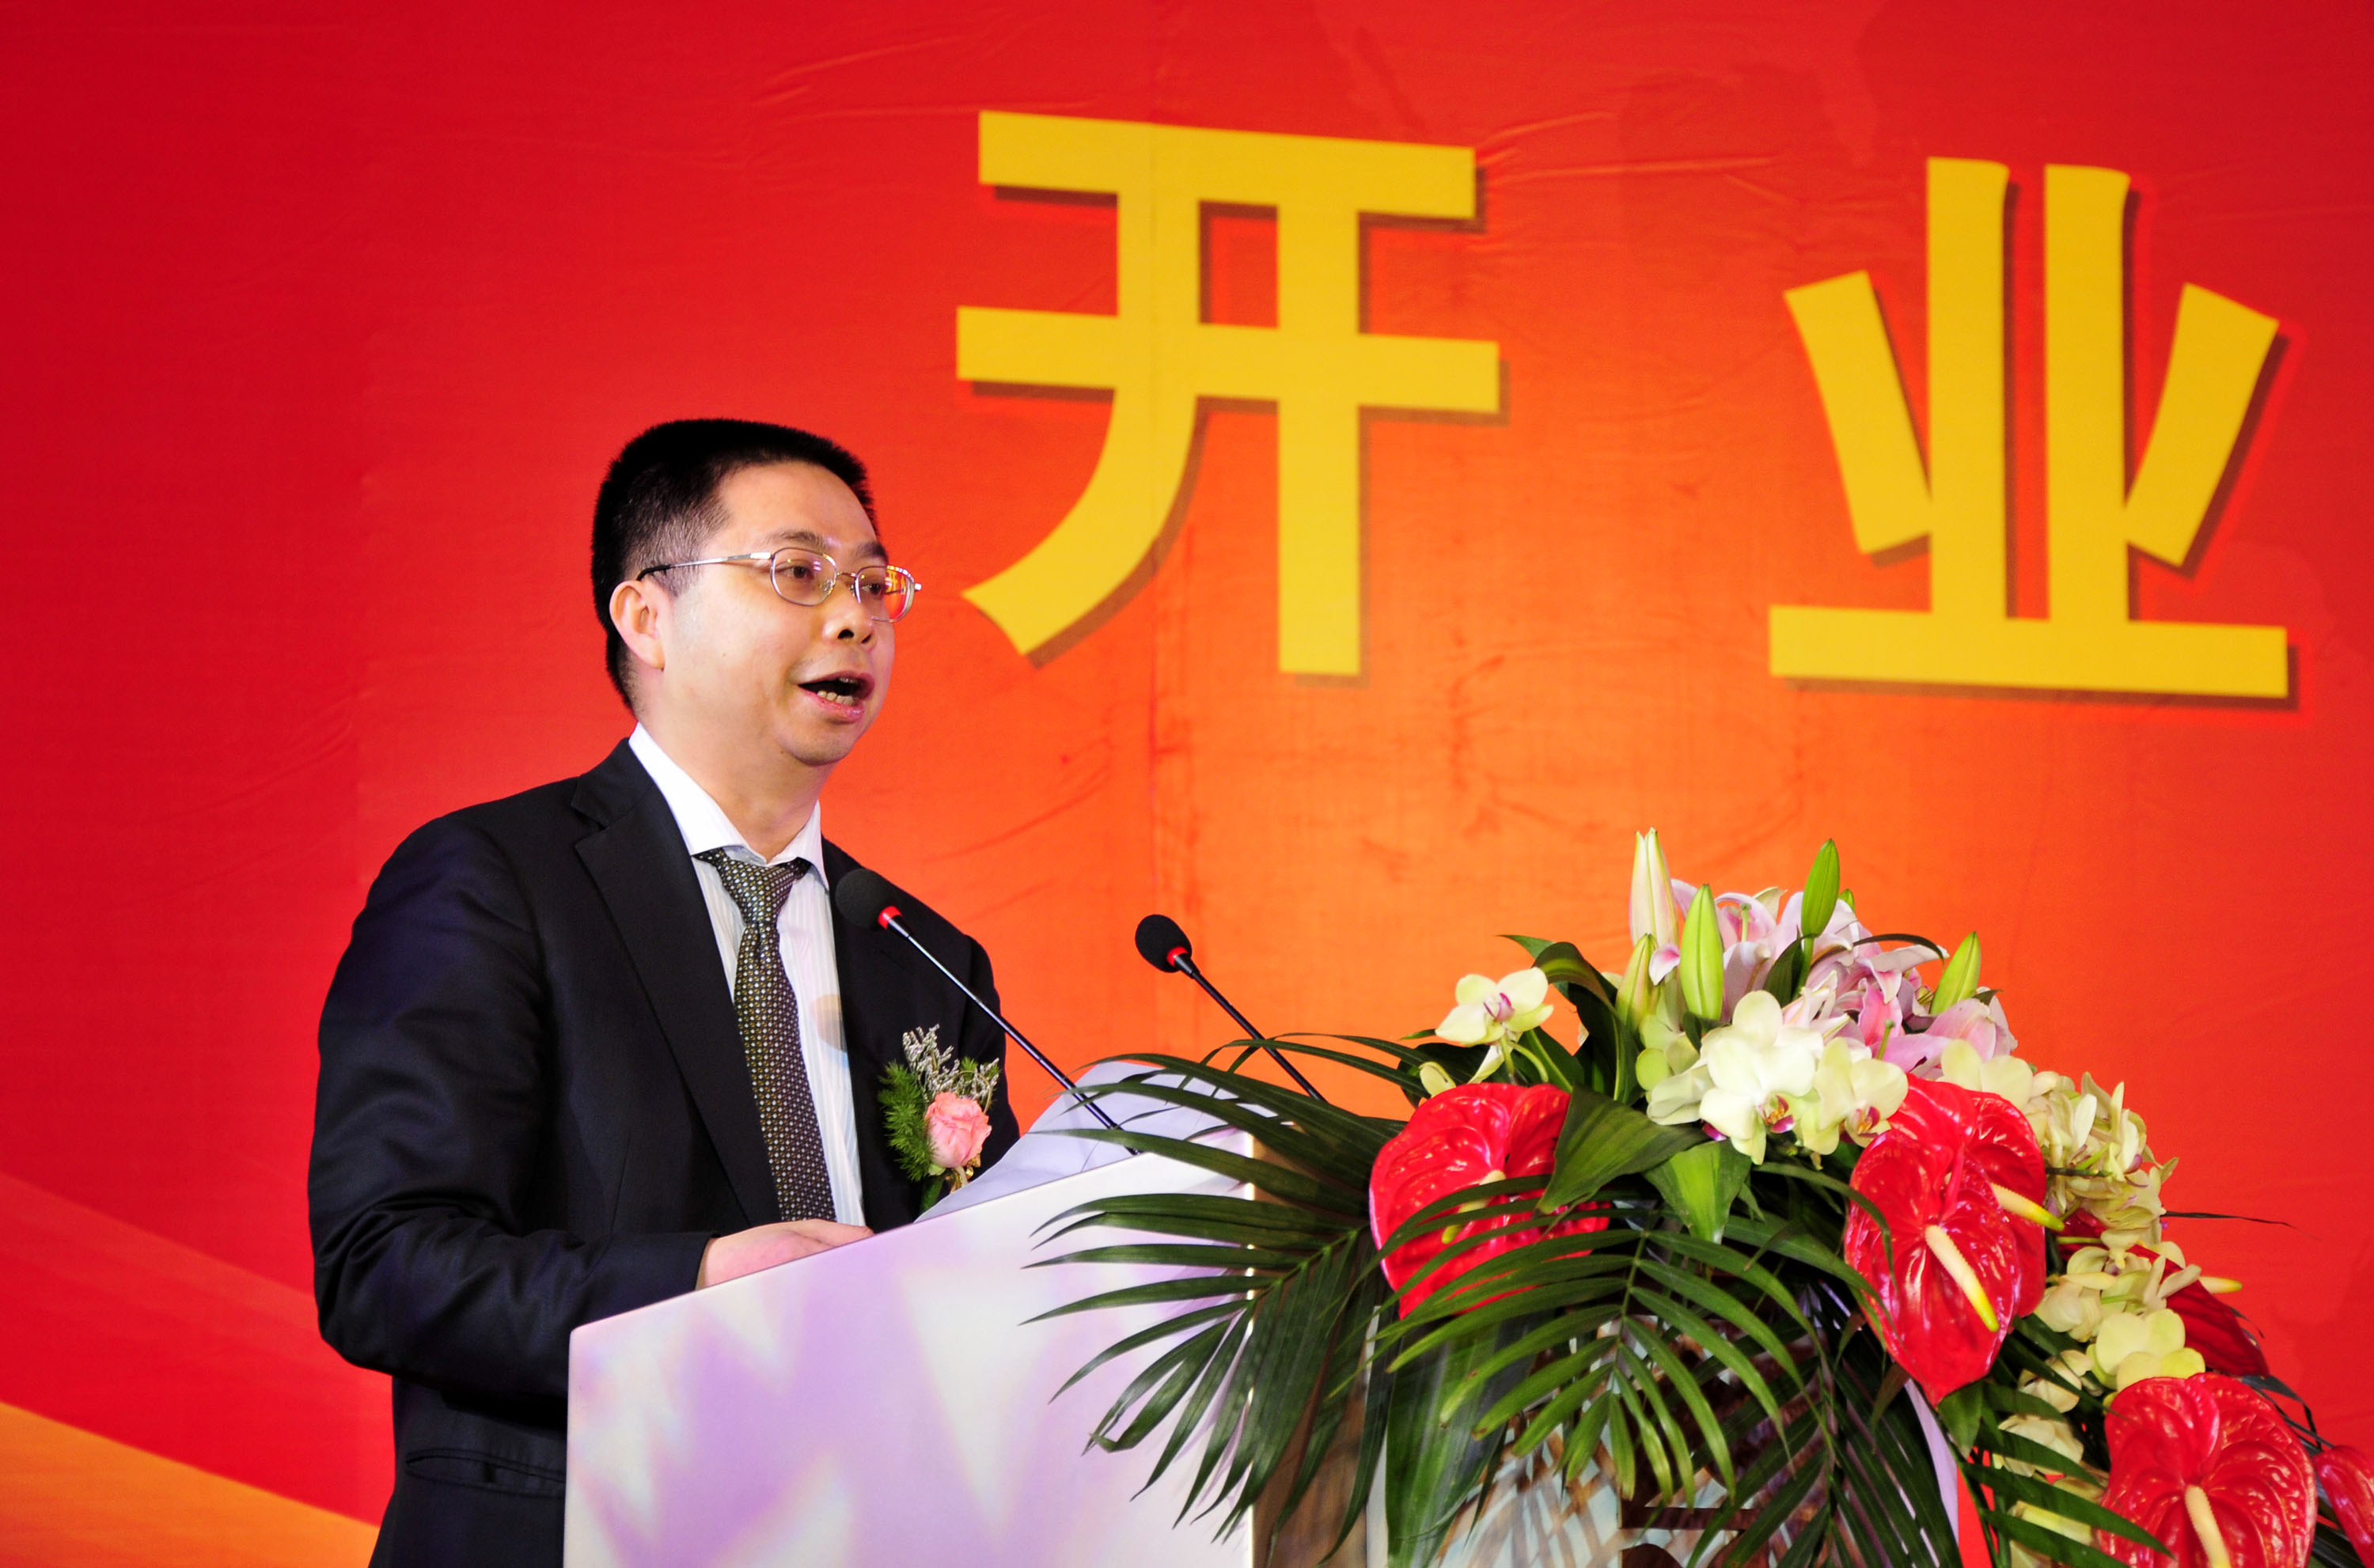 Yao Zhenhua, Chairman of Qian Hai Life Insurance and Chairman of Baoneng Group, delivers a speech in Shenzhen city, south China's Guangdong province, March 30, 2012. (Yuan shuiling—Imaginechina/AP)